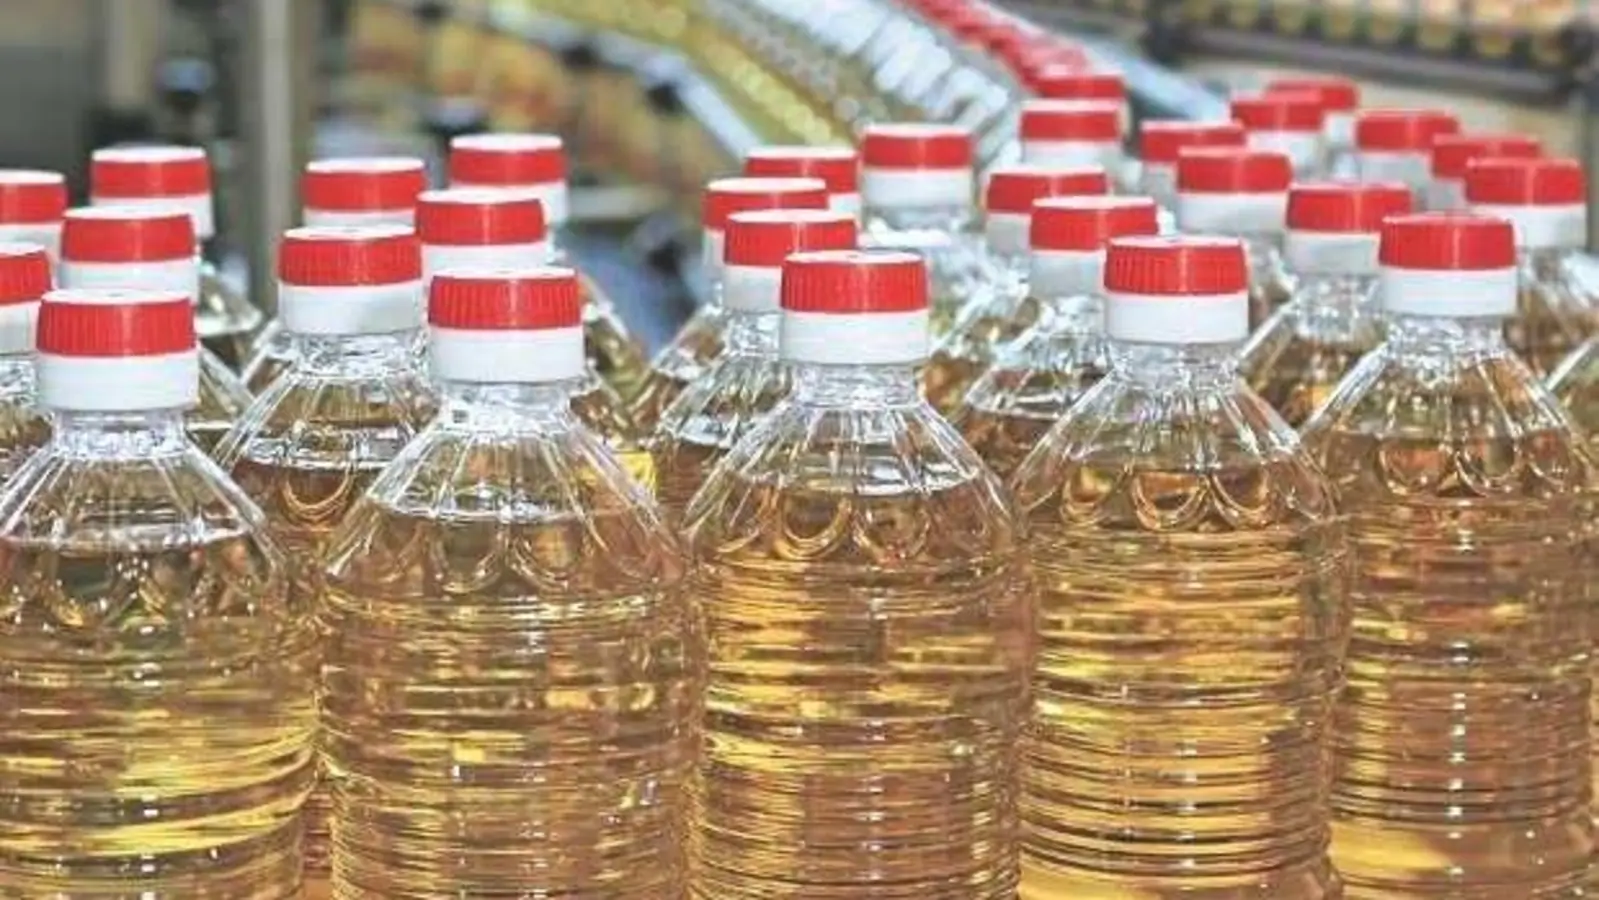 India has enough edible oil stock: Govt